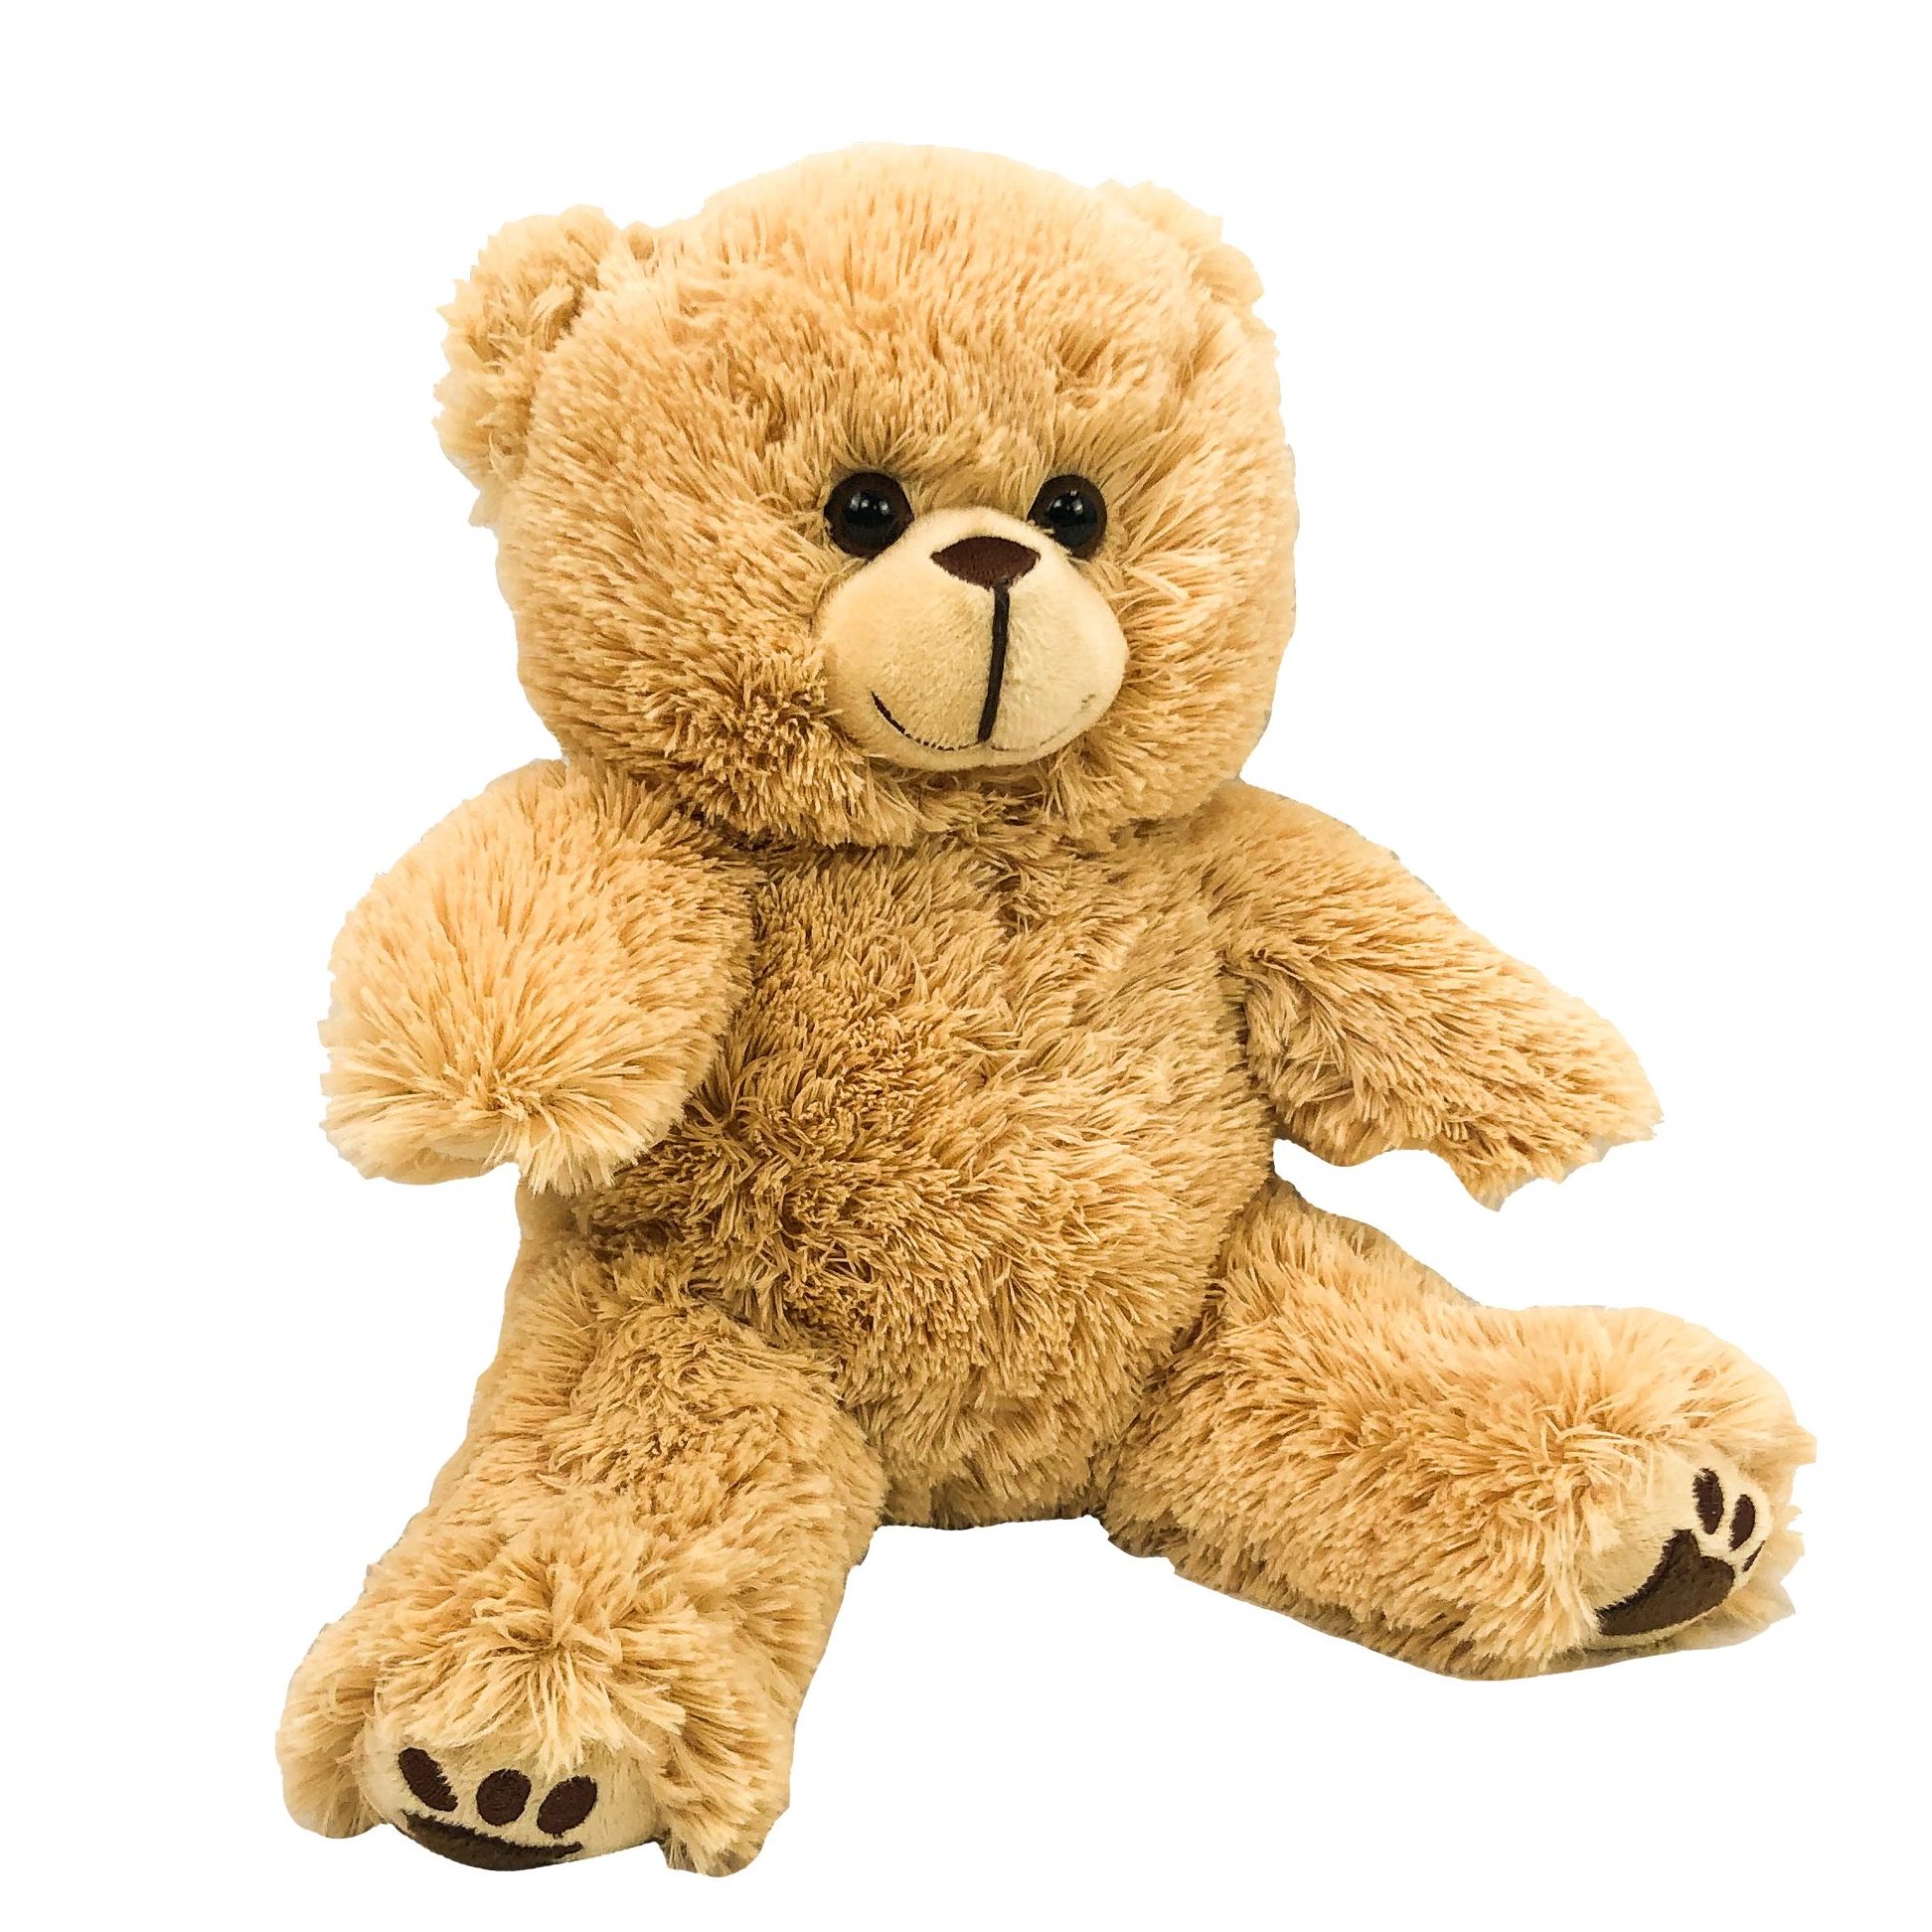 Baby Billy Teddy Bear | 8